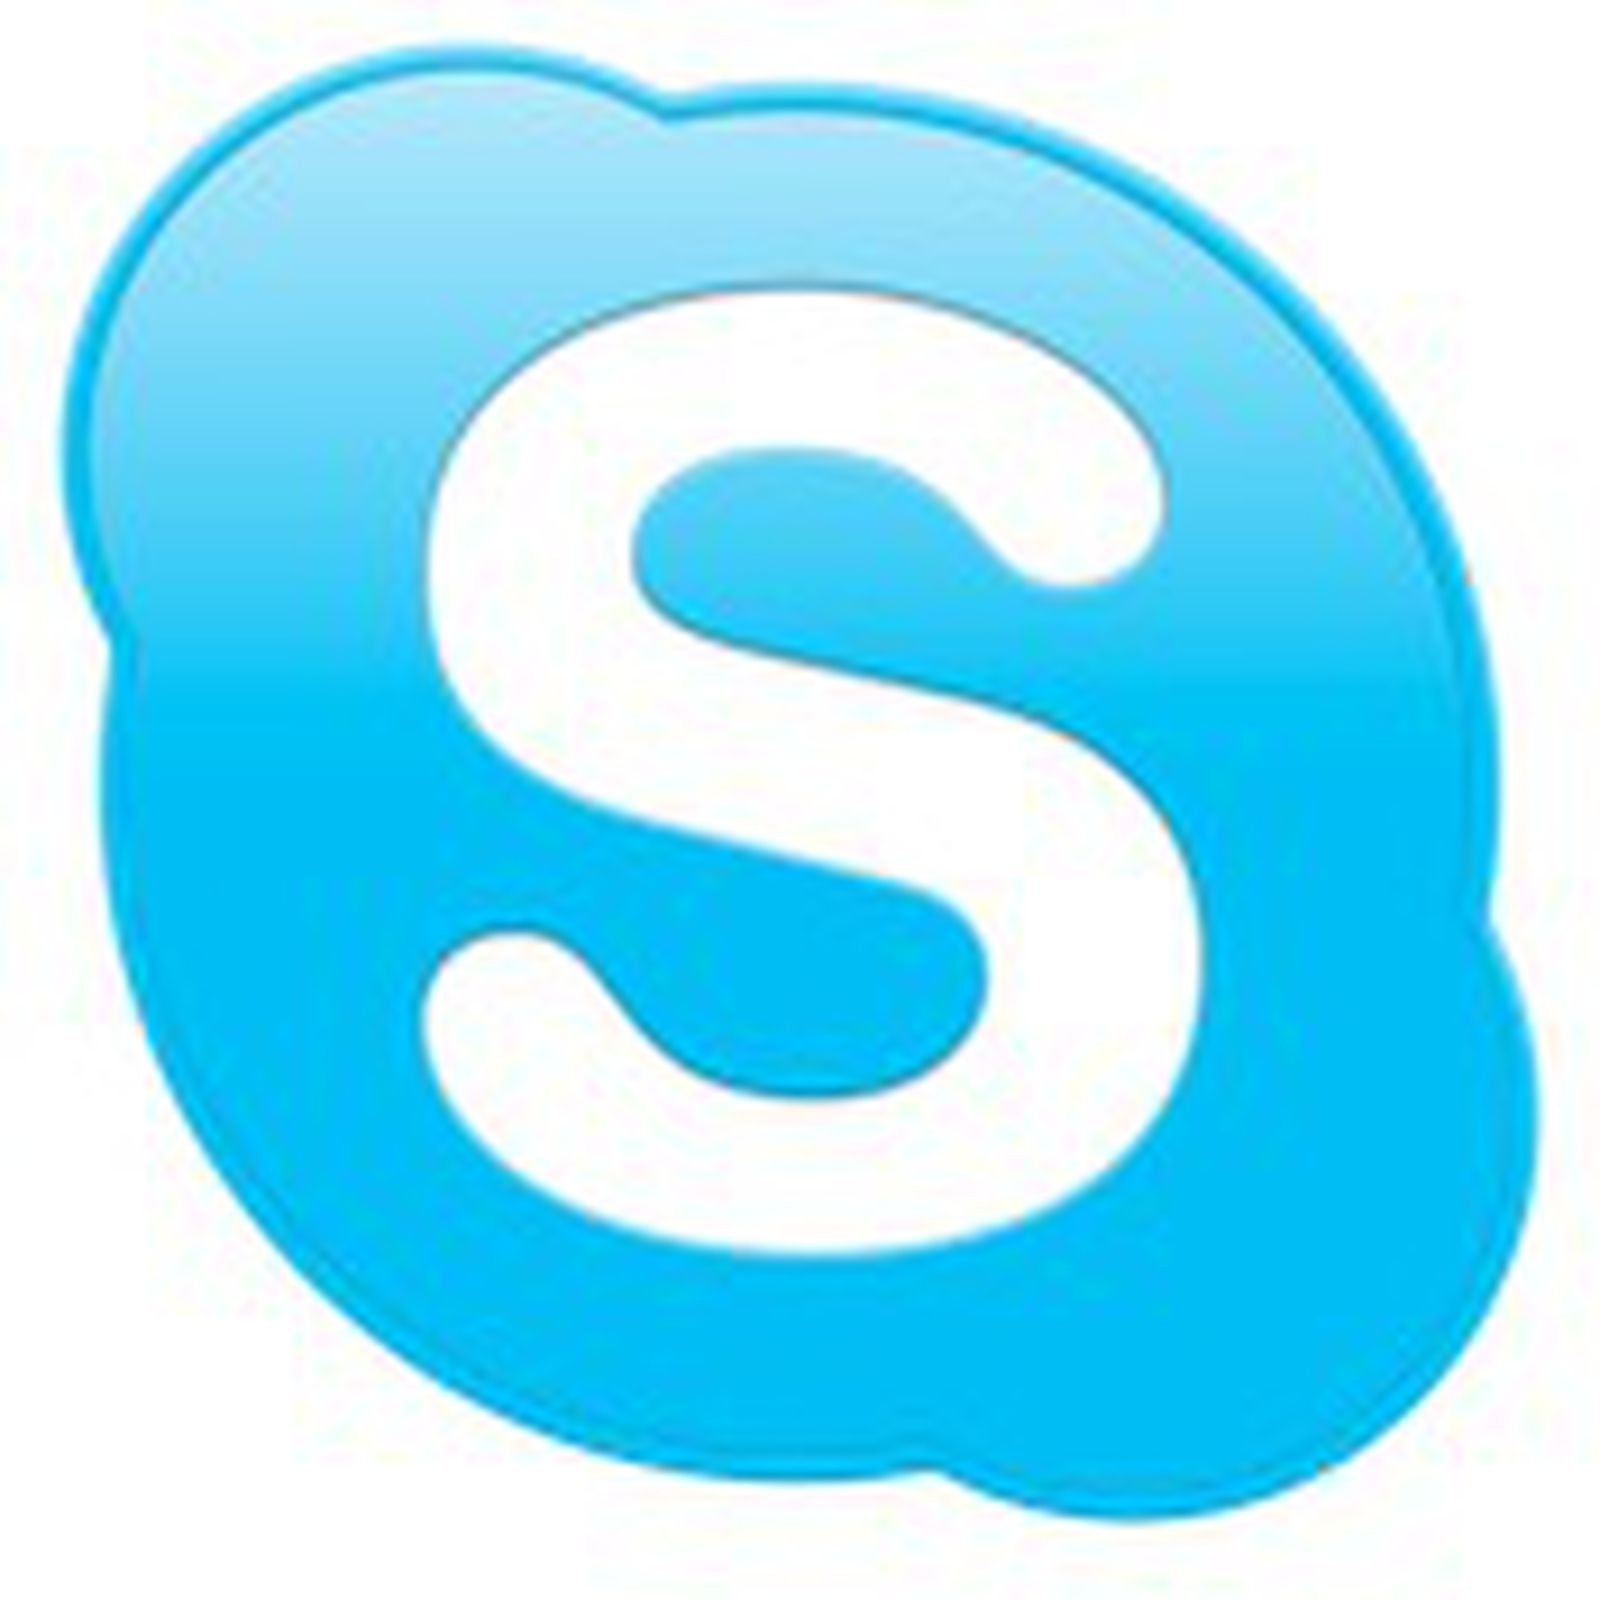 skype version 6.15 for mac.